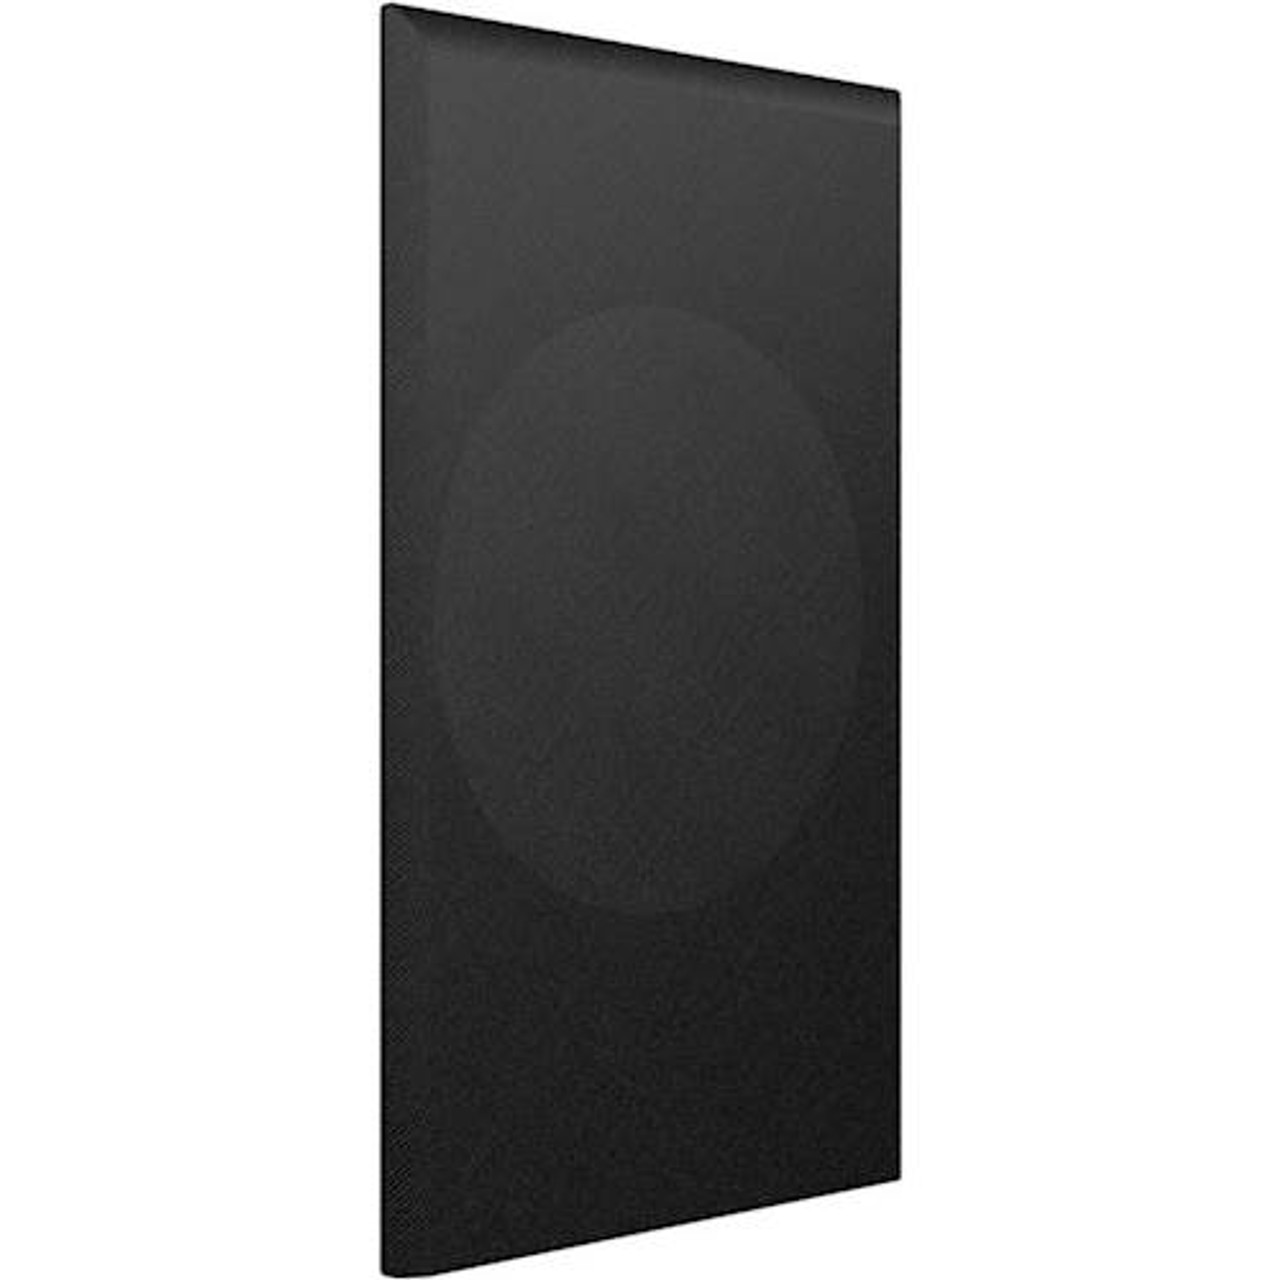 KEF - Cloth Grille for Q350 Bookshelf Speaker (Each) - Black